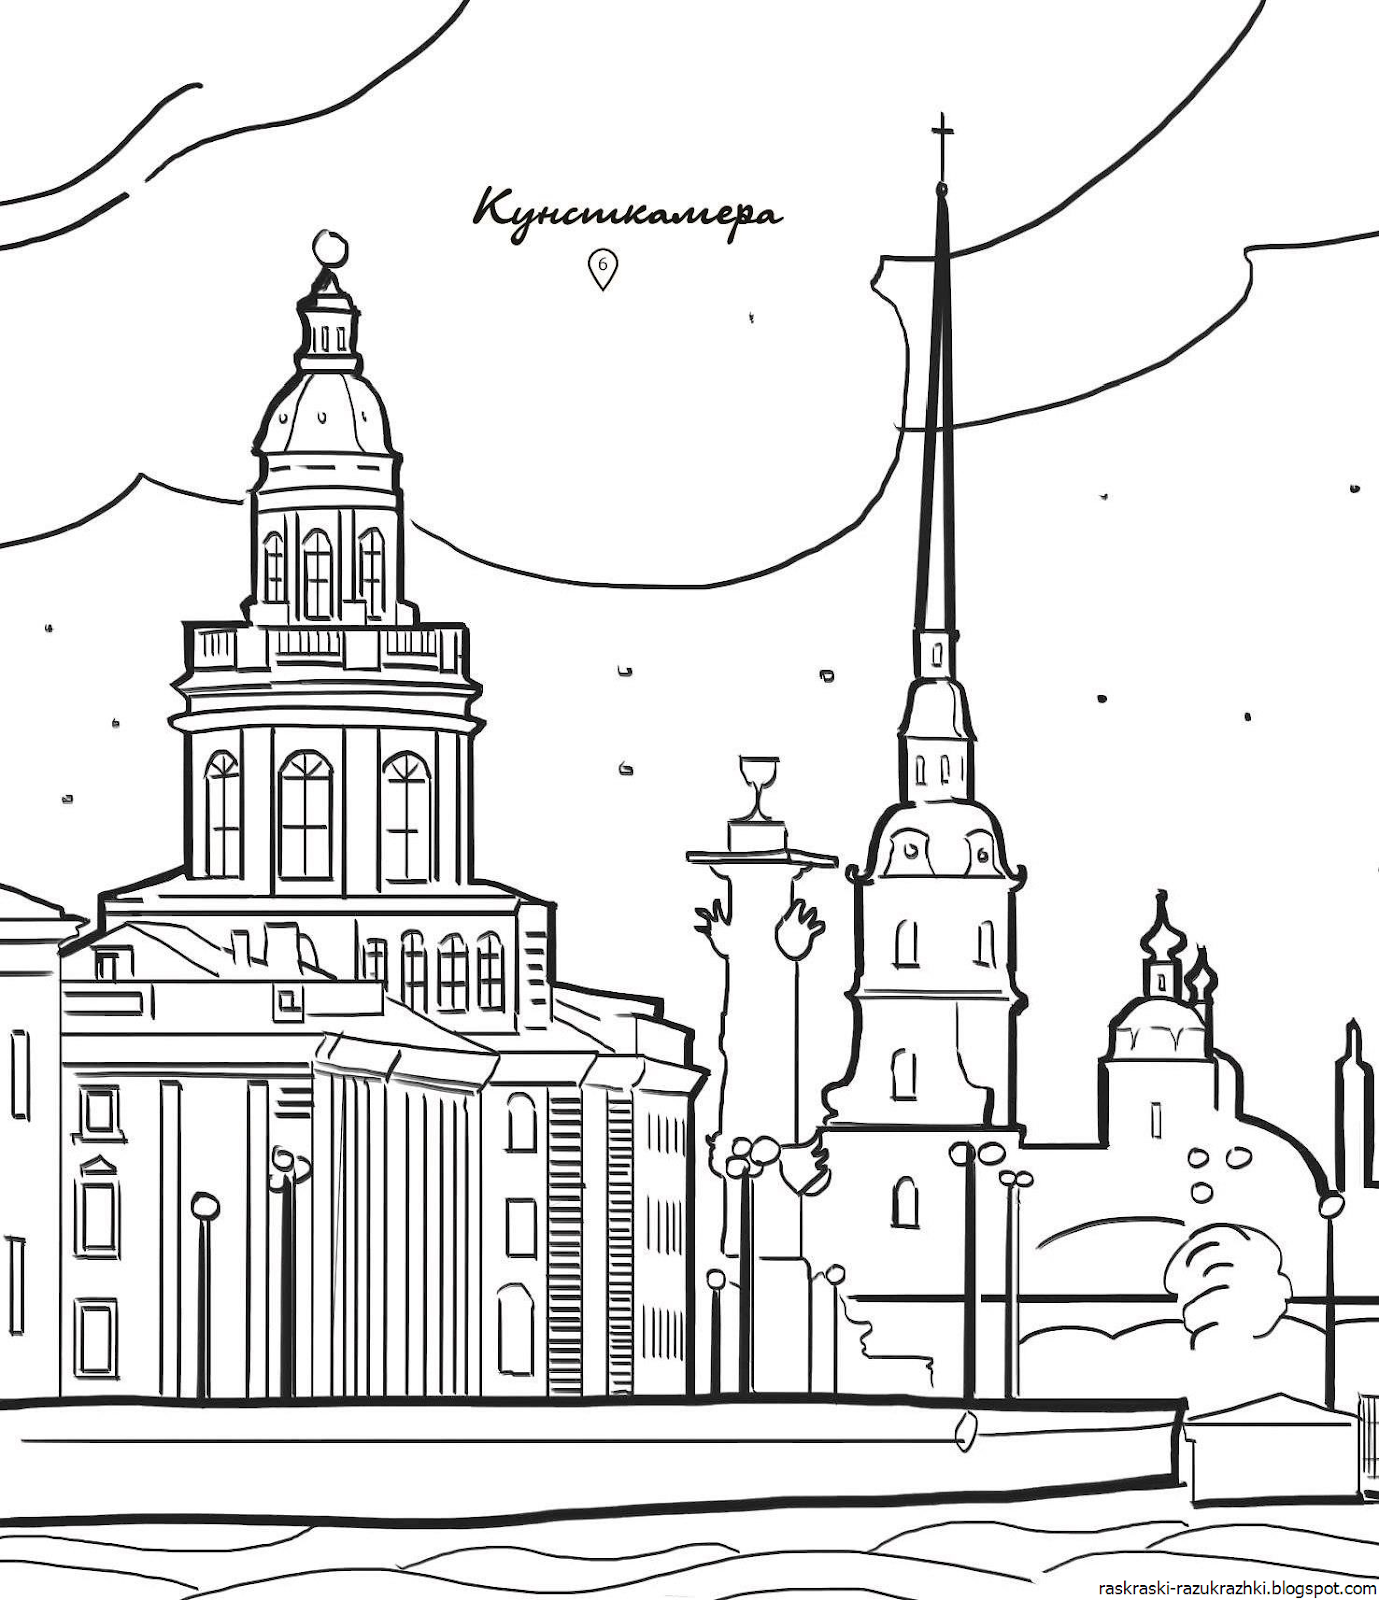 Жителям Петербурга предложили раскрасить главные достопримечательности города